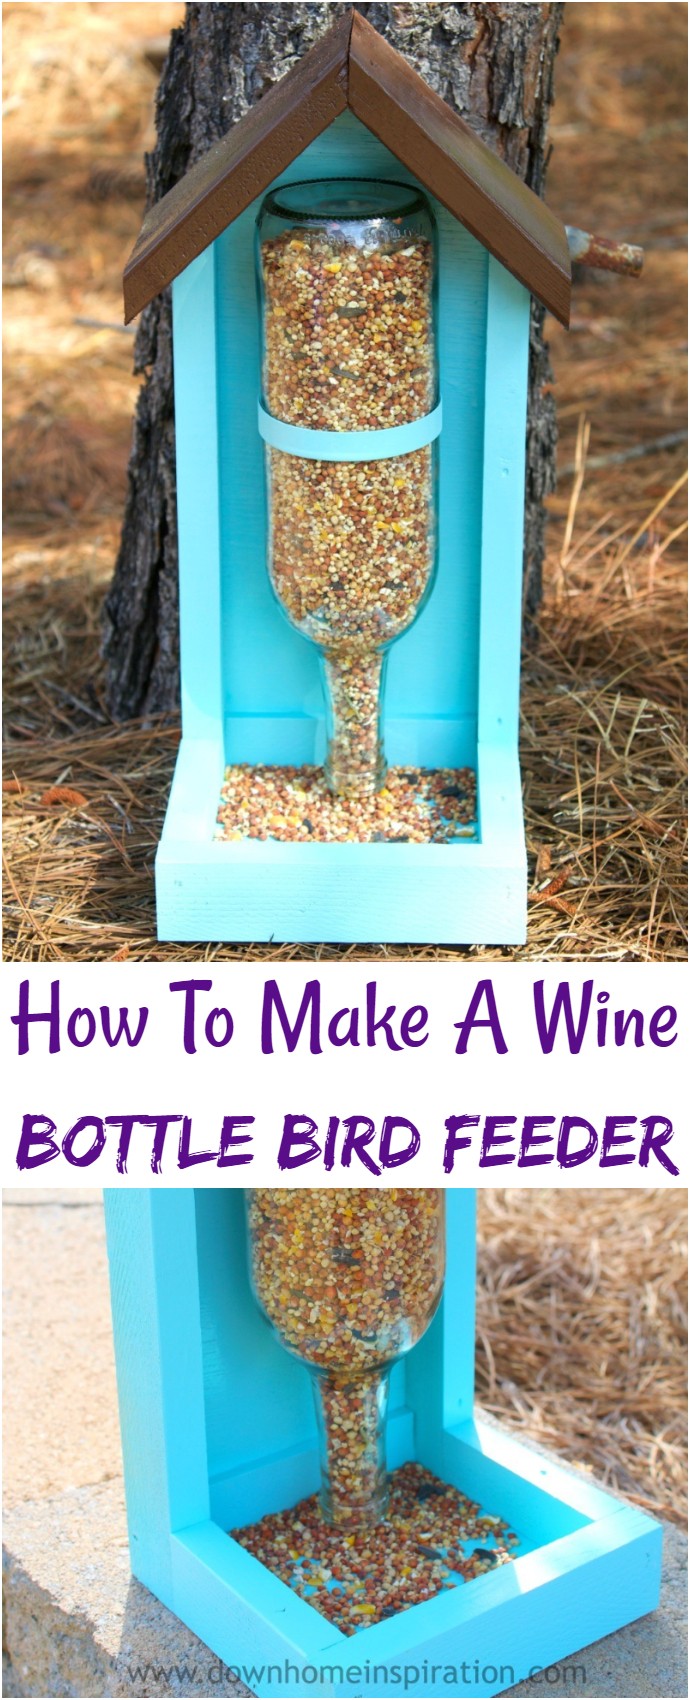 How To Make A Wine Bottle Bird Feeder